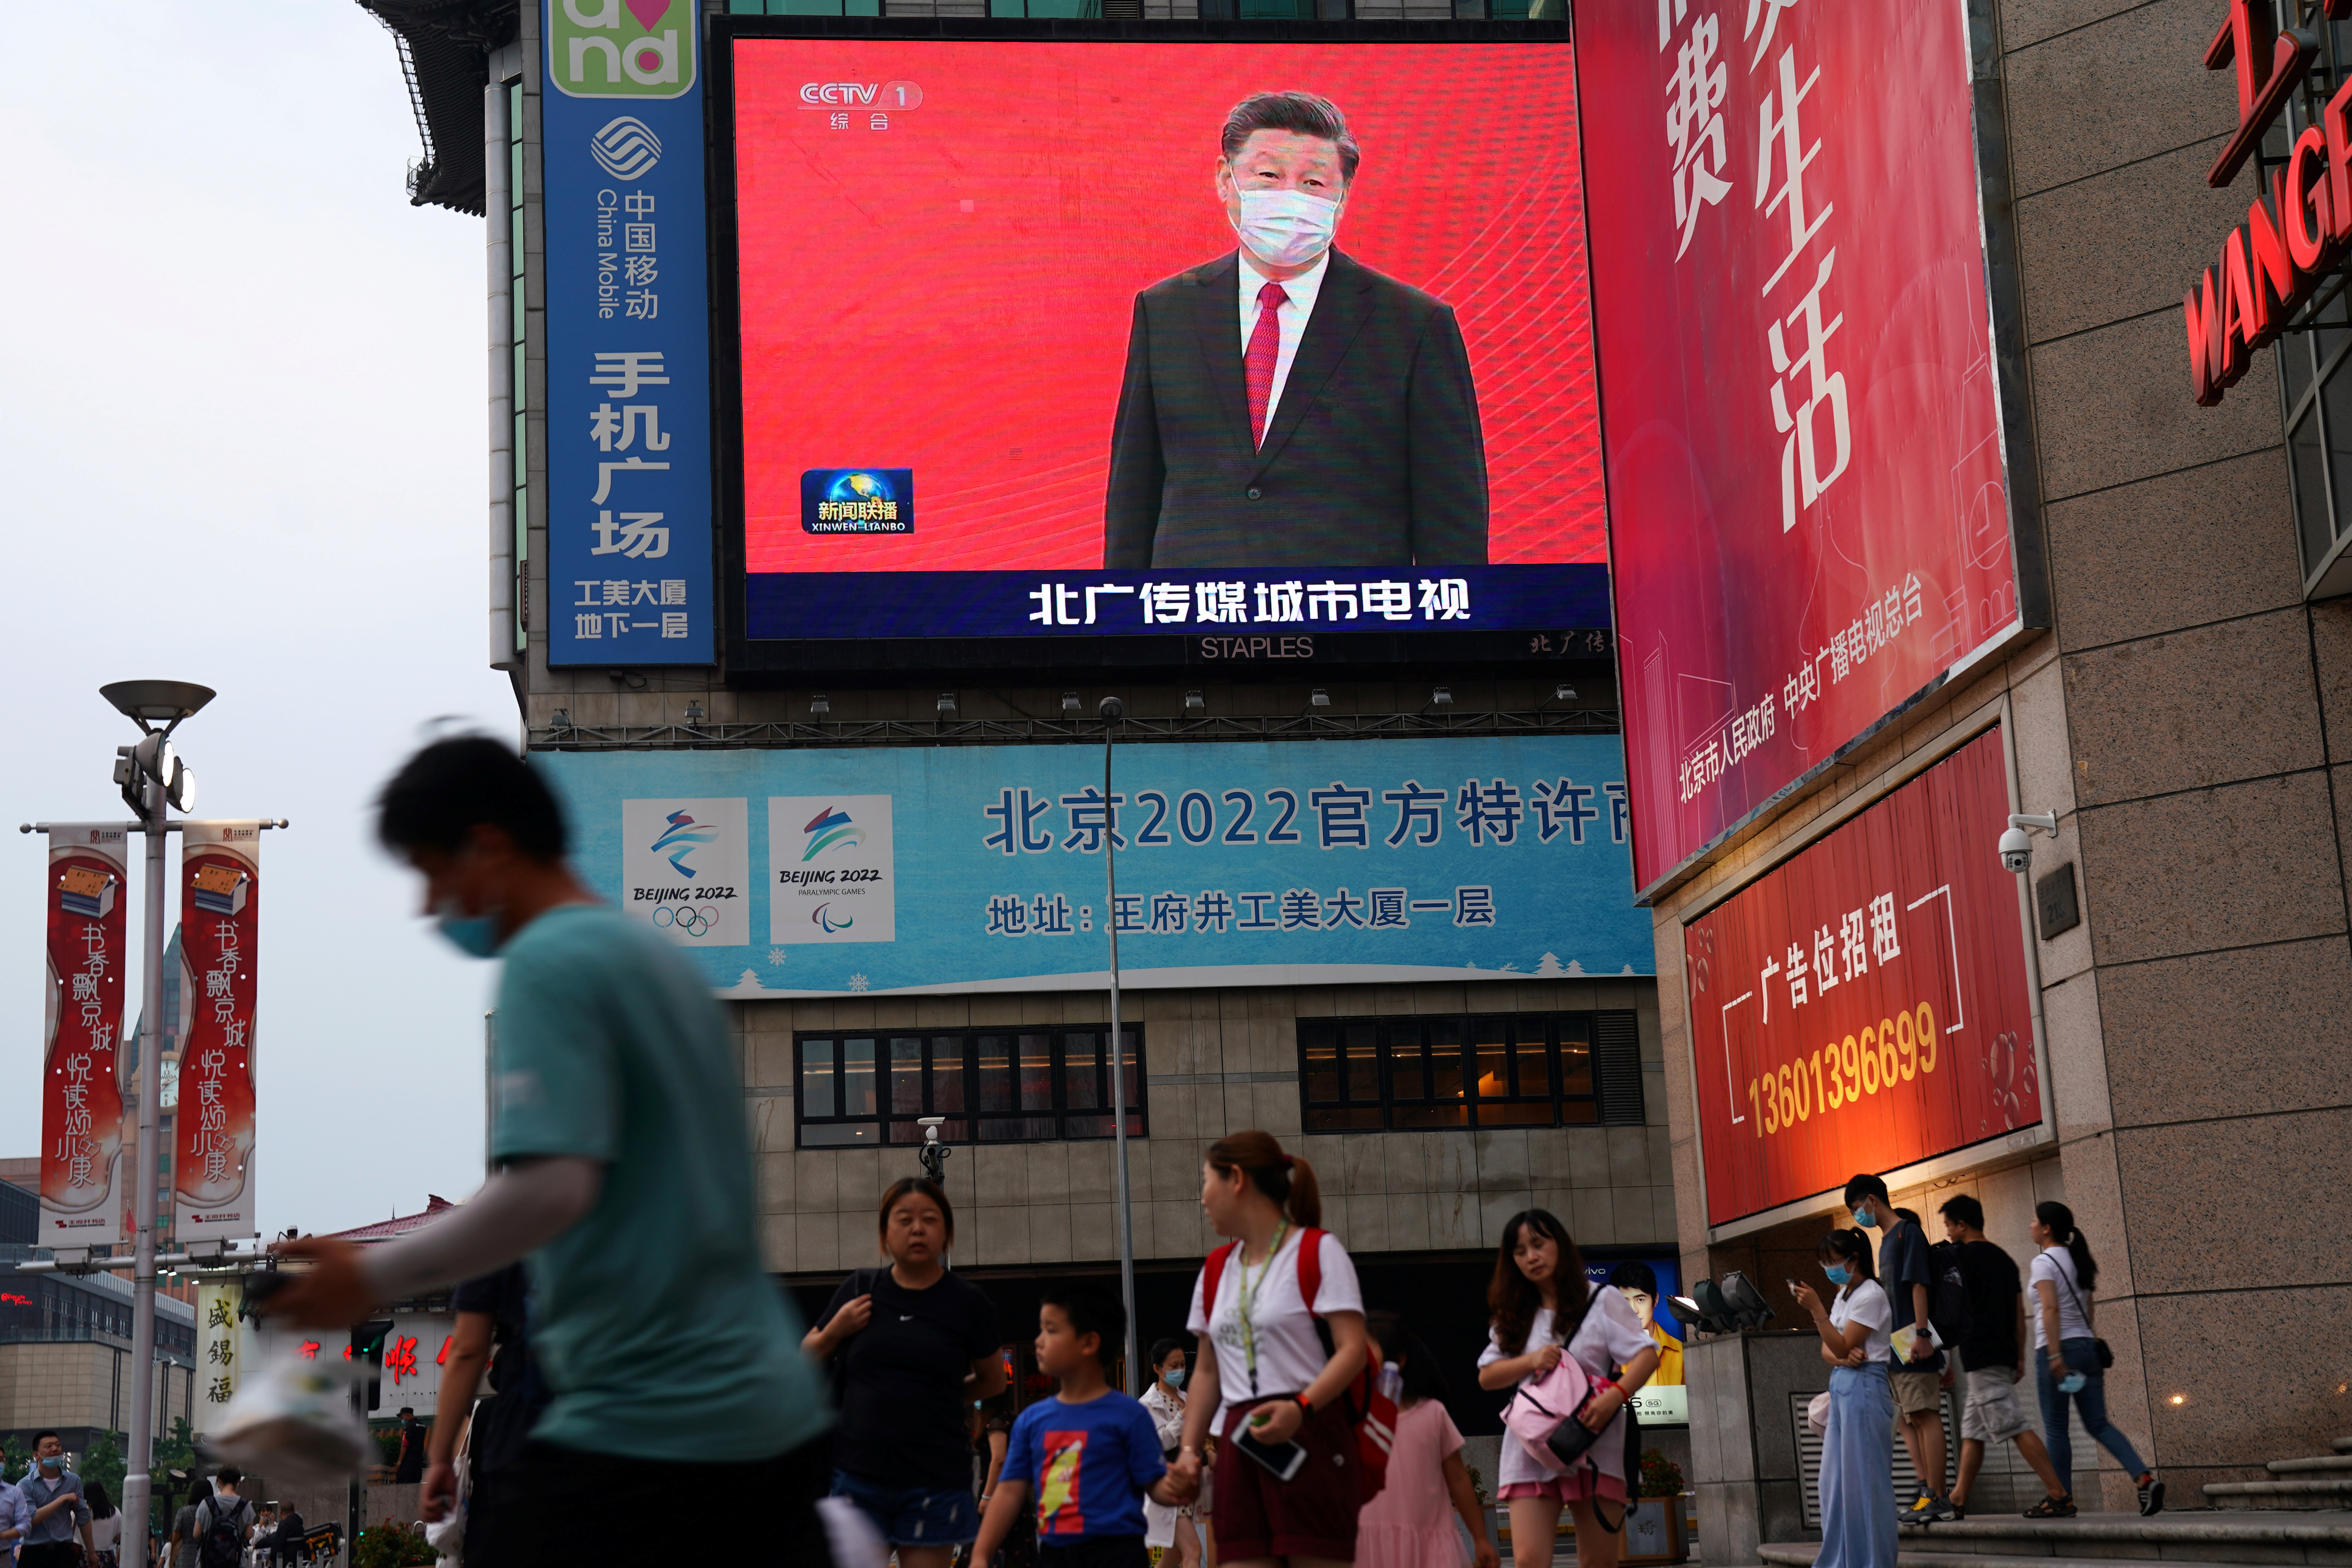 En todas partes. Personas con mascarillas pasan frente a una pantalla gigante que muestra imágenes de noticias del presidente chino Xi Jinping con una mascarilla, en una zona comercial en Beijing (Reuters)